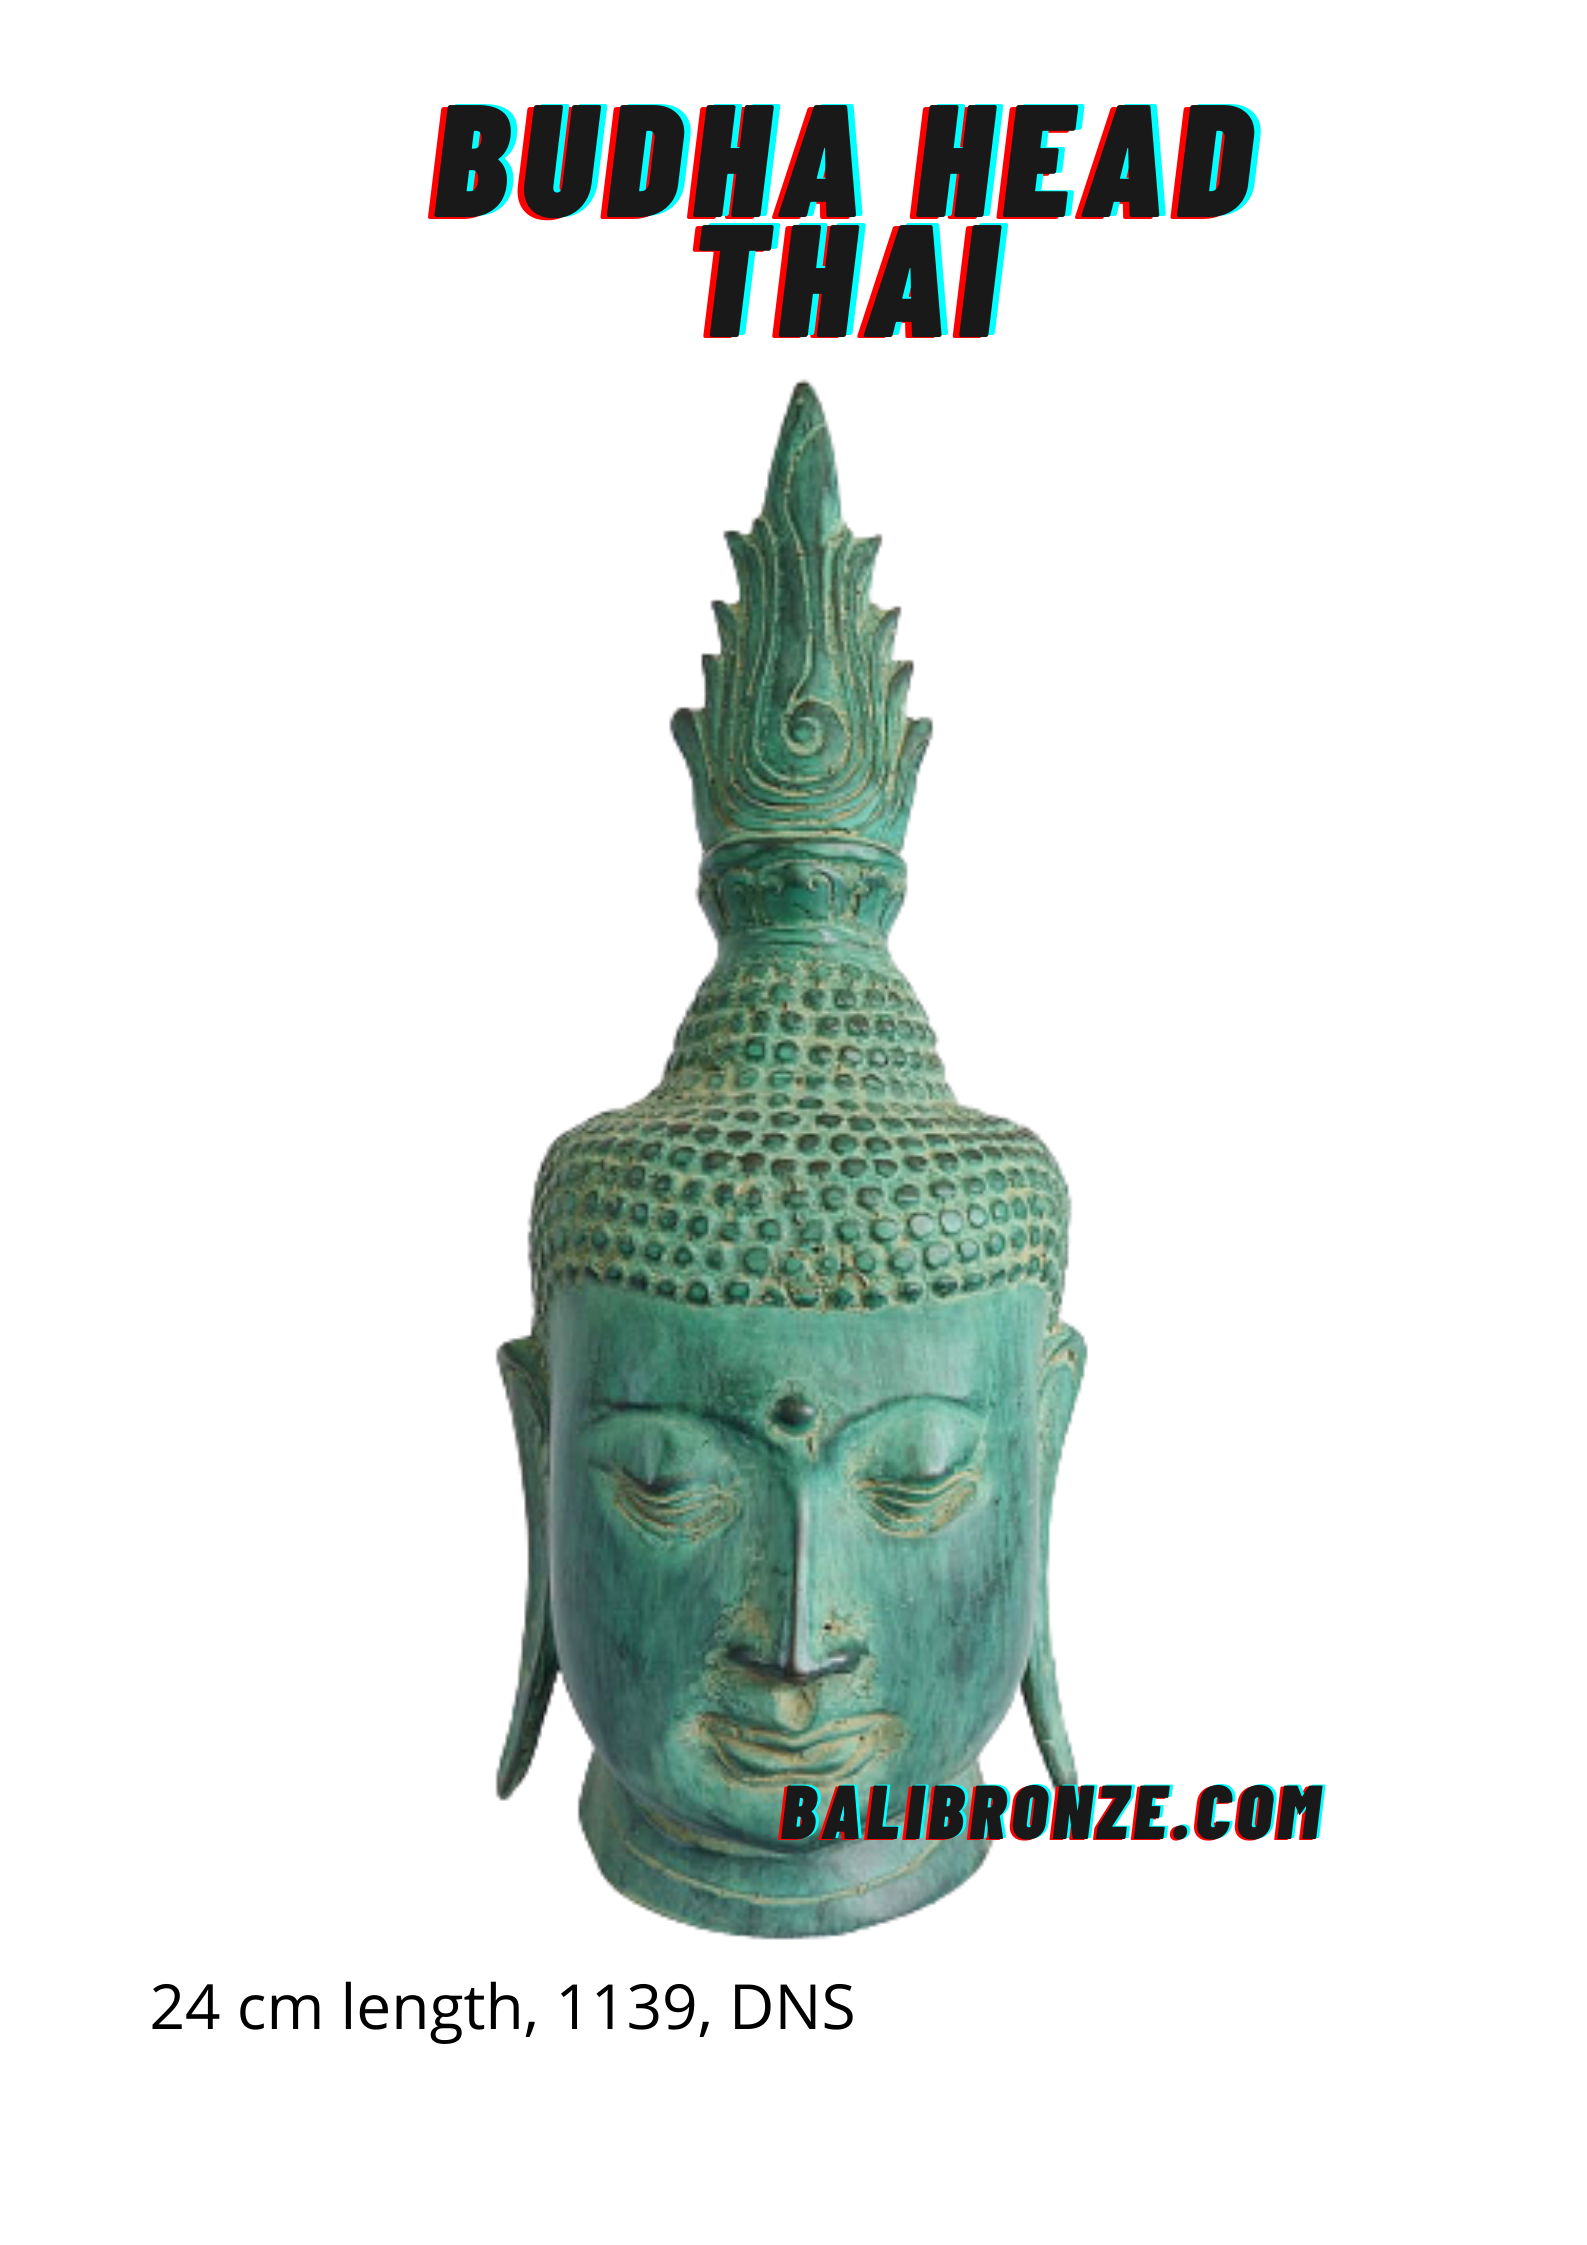 1139 Budha Head Thai 24 cm DNS